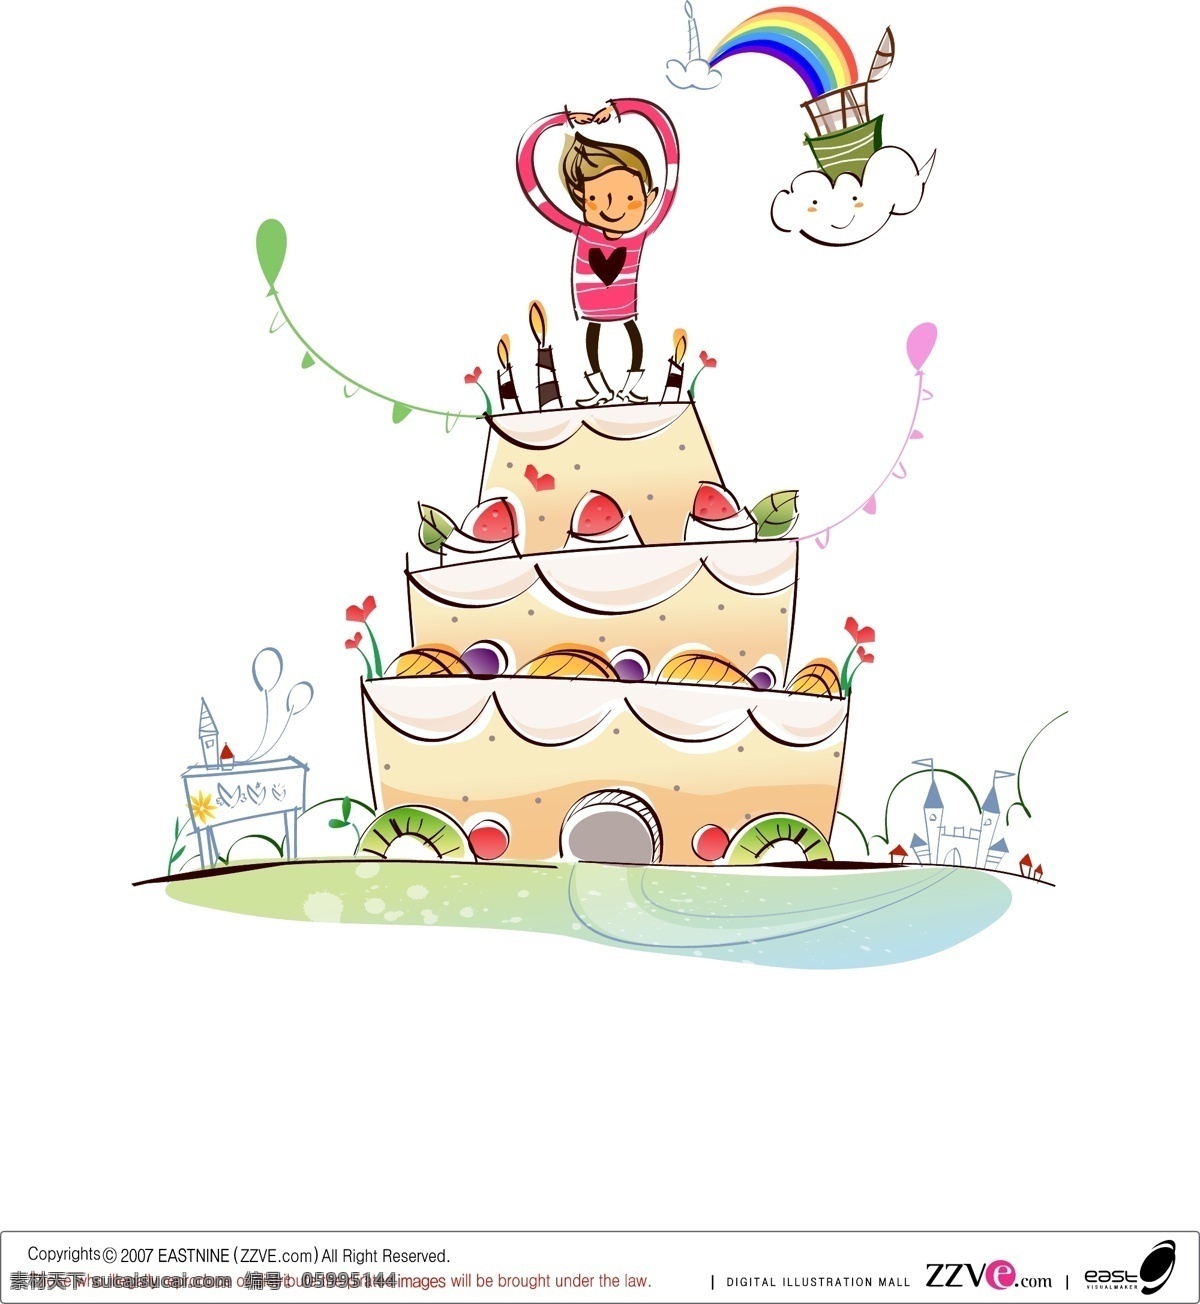 童话 世界 大 蛋糕 童话世界 大蛋糕 三层蛋糕 生日蛋糕 爱心大蛋糕 卡通世界 欢乐生活场景 矢量 人物 抽象 插画 动漫动画 动漫人物